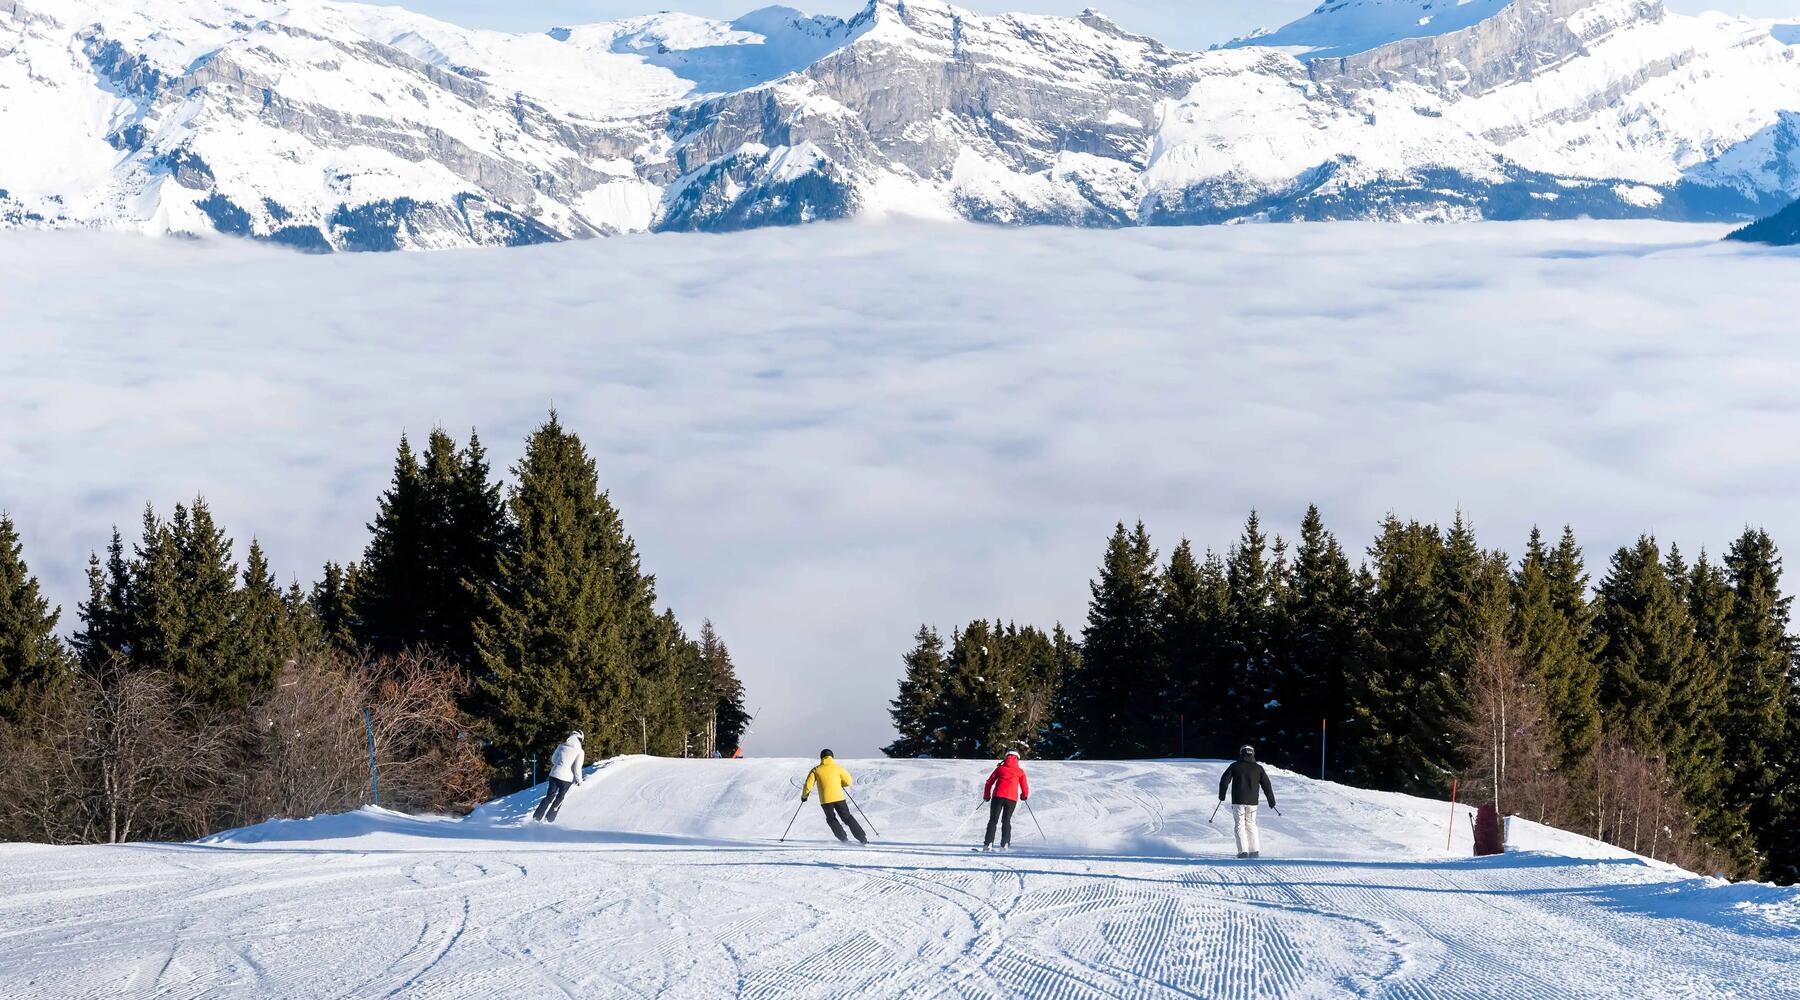 6 accessoires indispensables pour partir au ski cet hiver